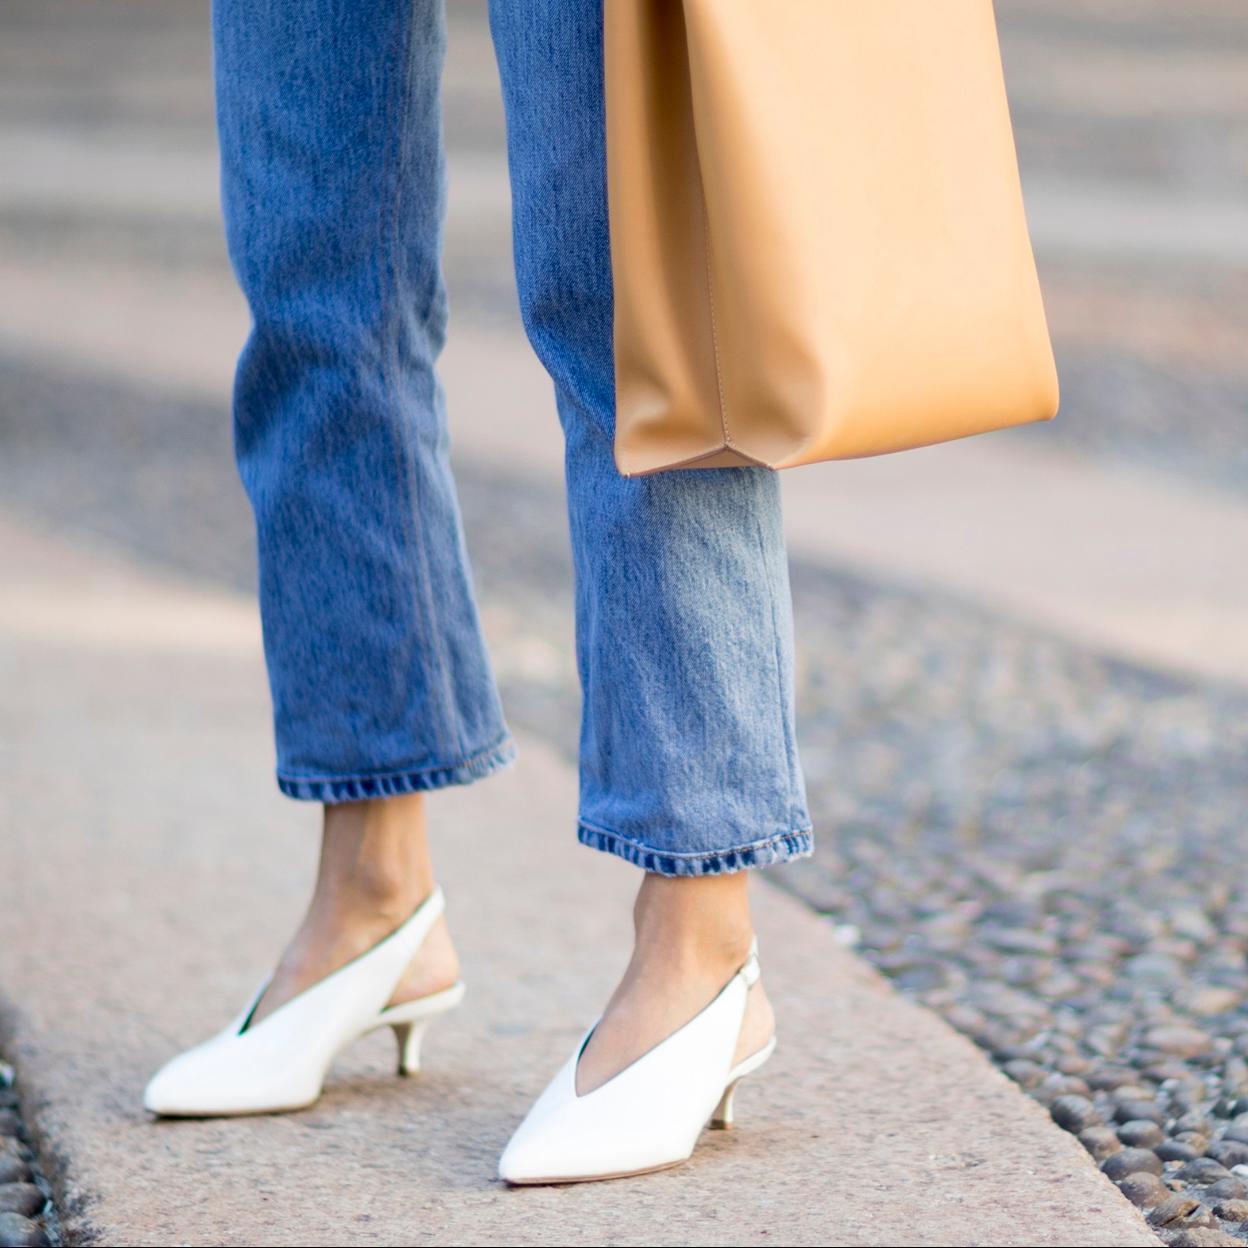 Bailarinas, mocasines, botines... los zapatos cómodos más bonitos de la nueva colección de Sfera para llevar a la oficina en todo de estilismos | Mujer Hoy